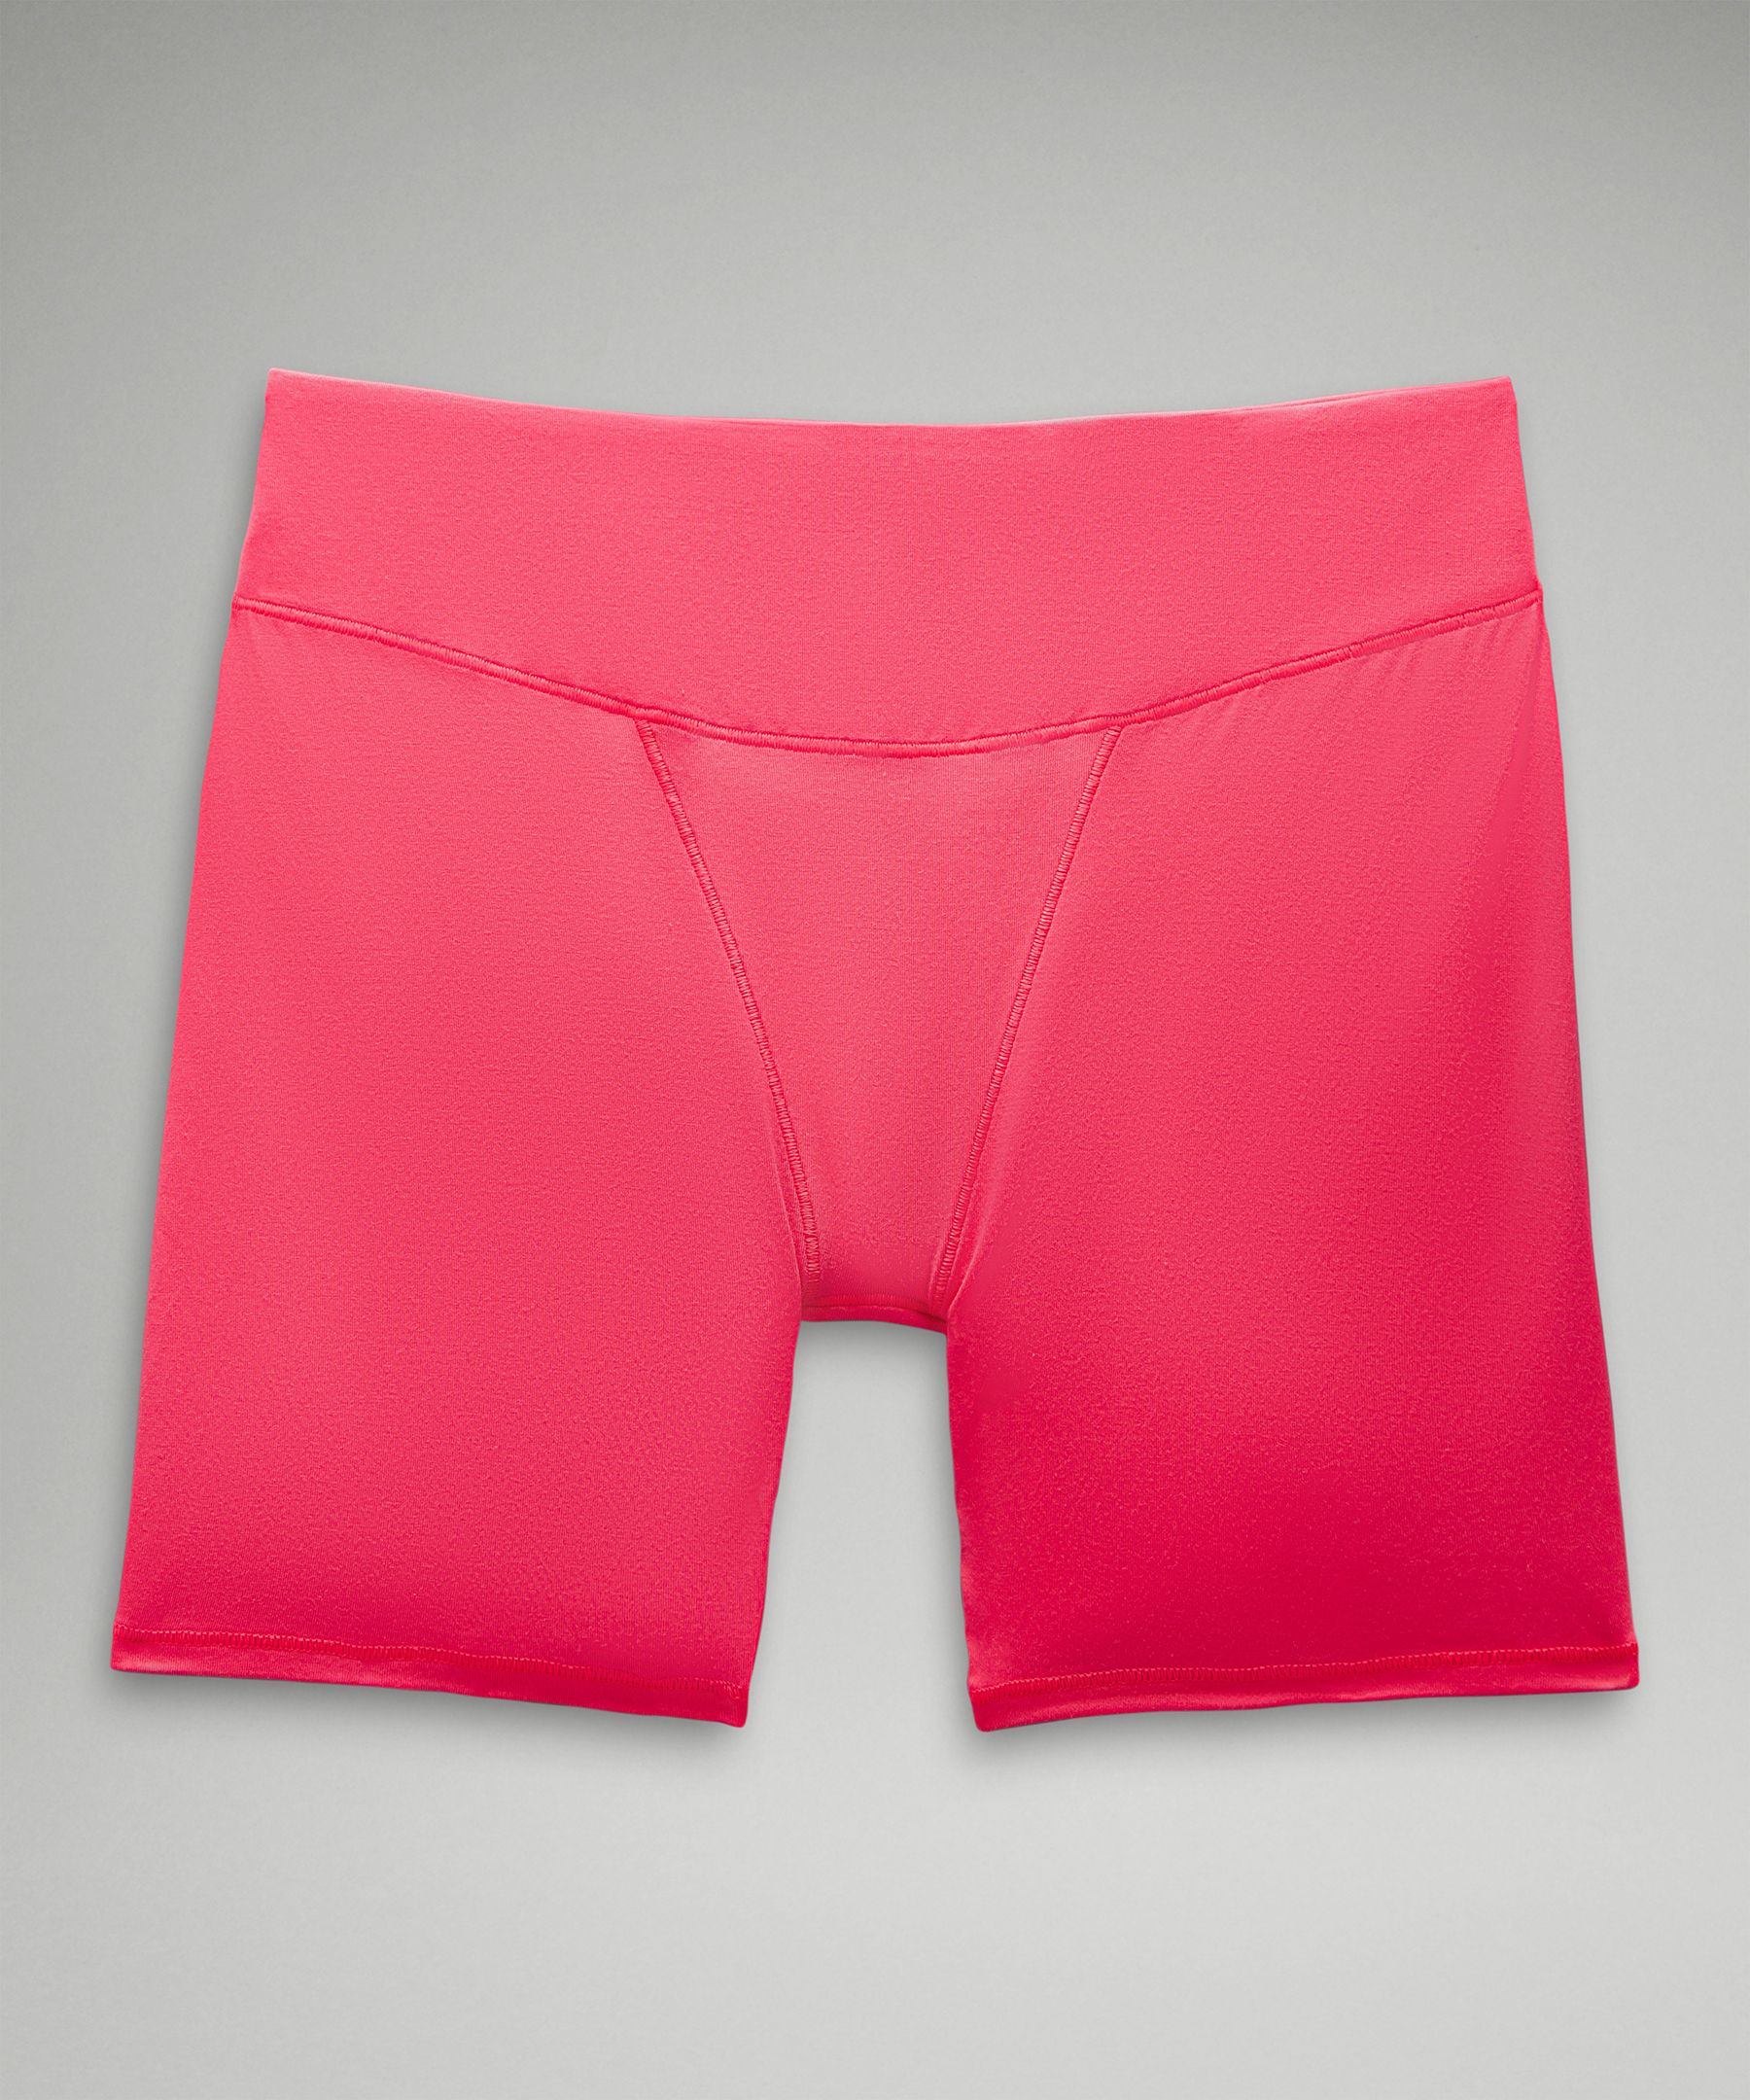 UnderEase Super-High-Rise Shortie Underwear, Women's Underwear